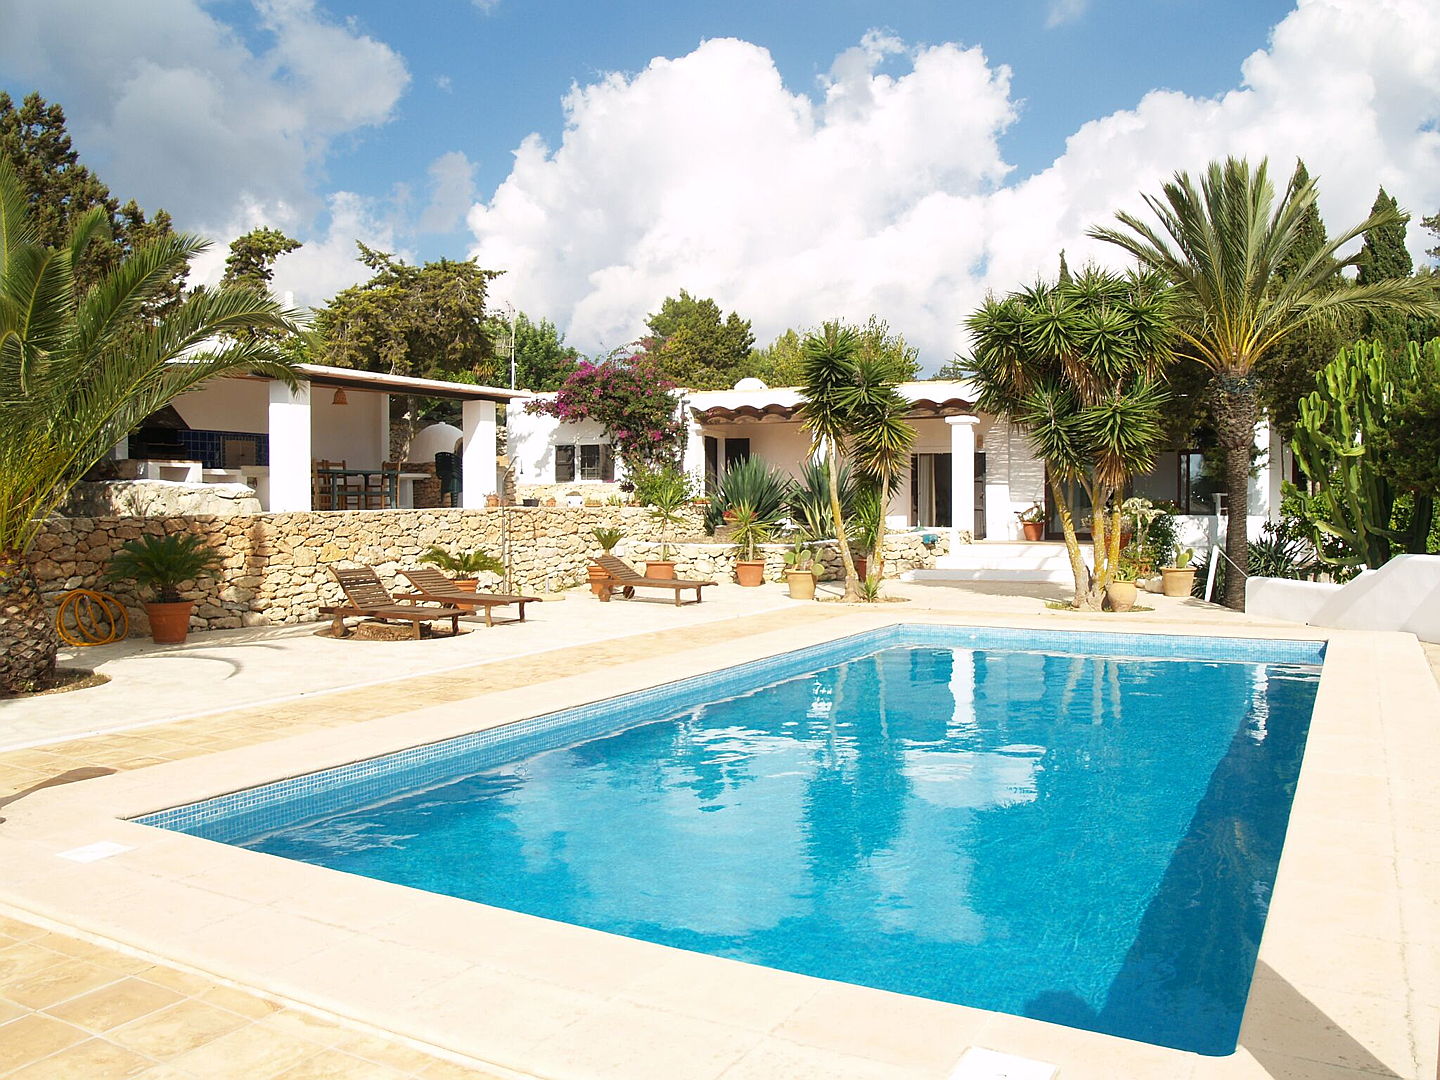  Ibiza
- Finca zum Kauf mit Pool und Palmen (San José)